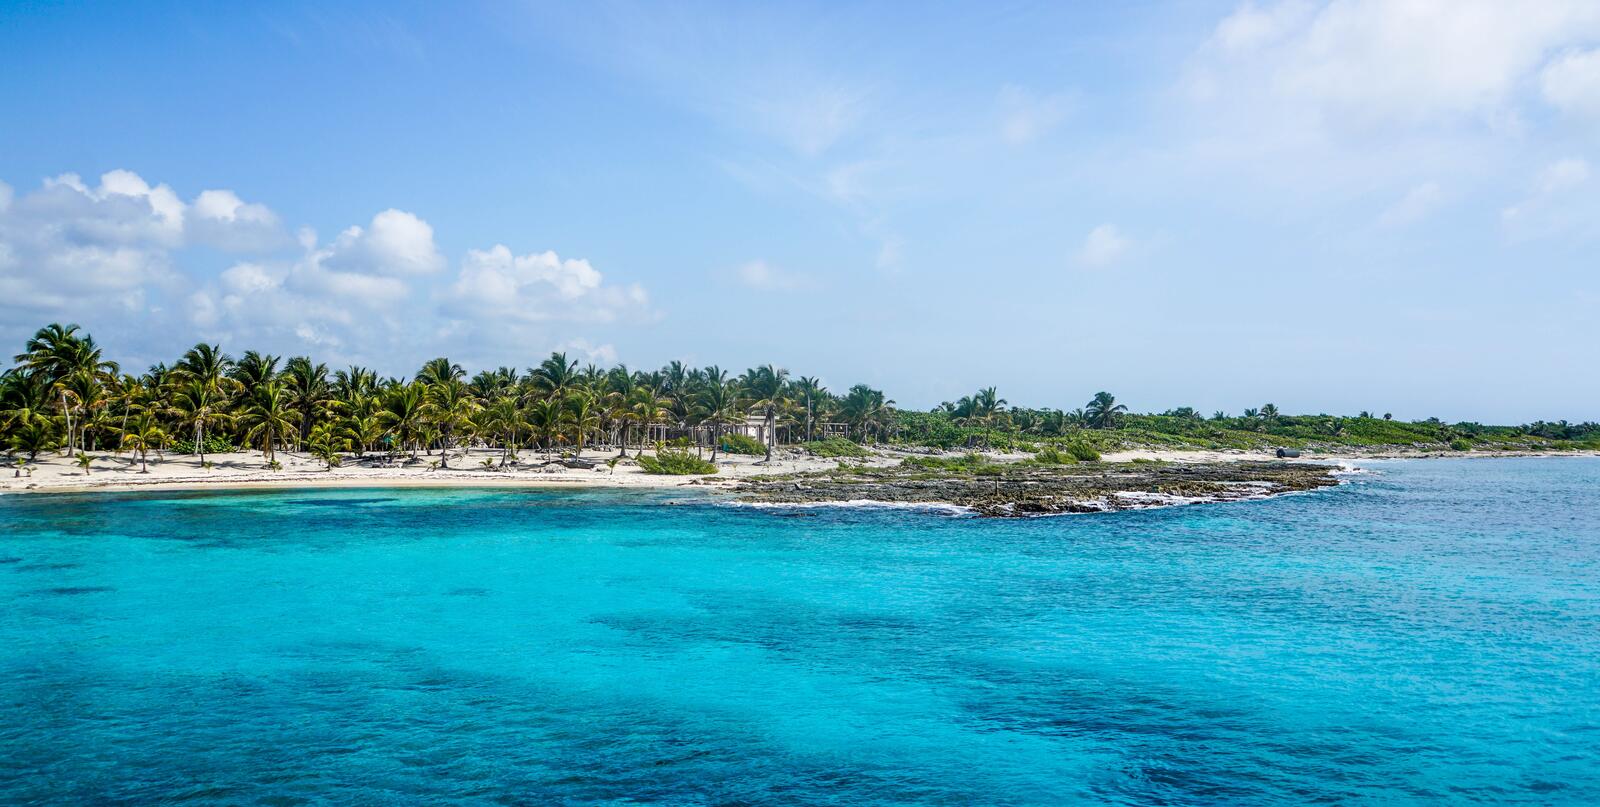 Бесплатное фото Вид на остров с пальмами